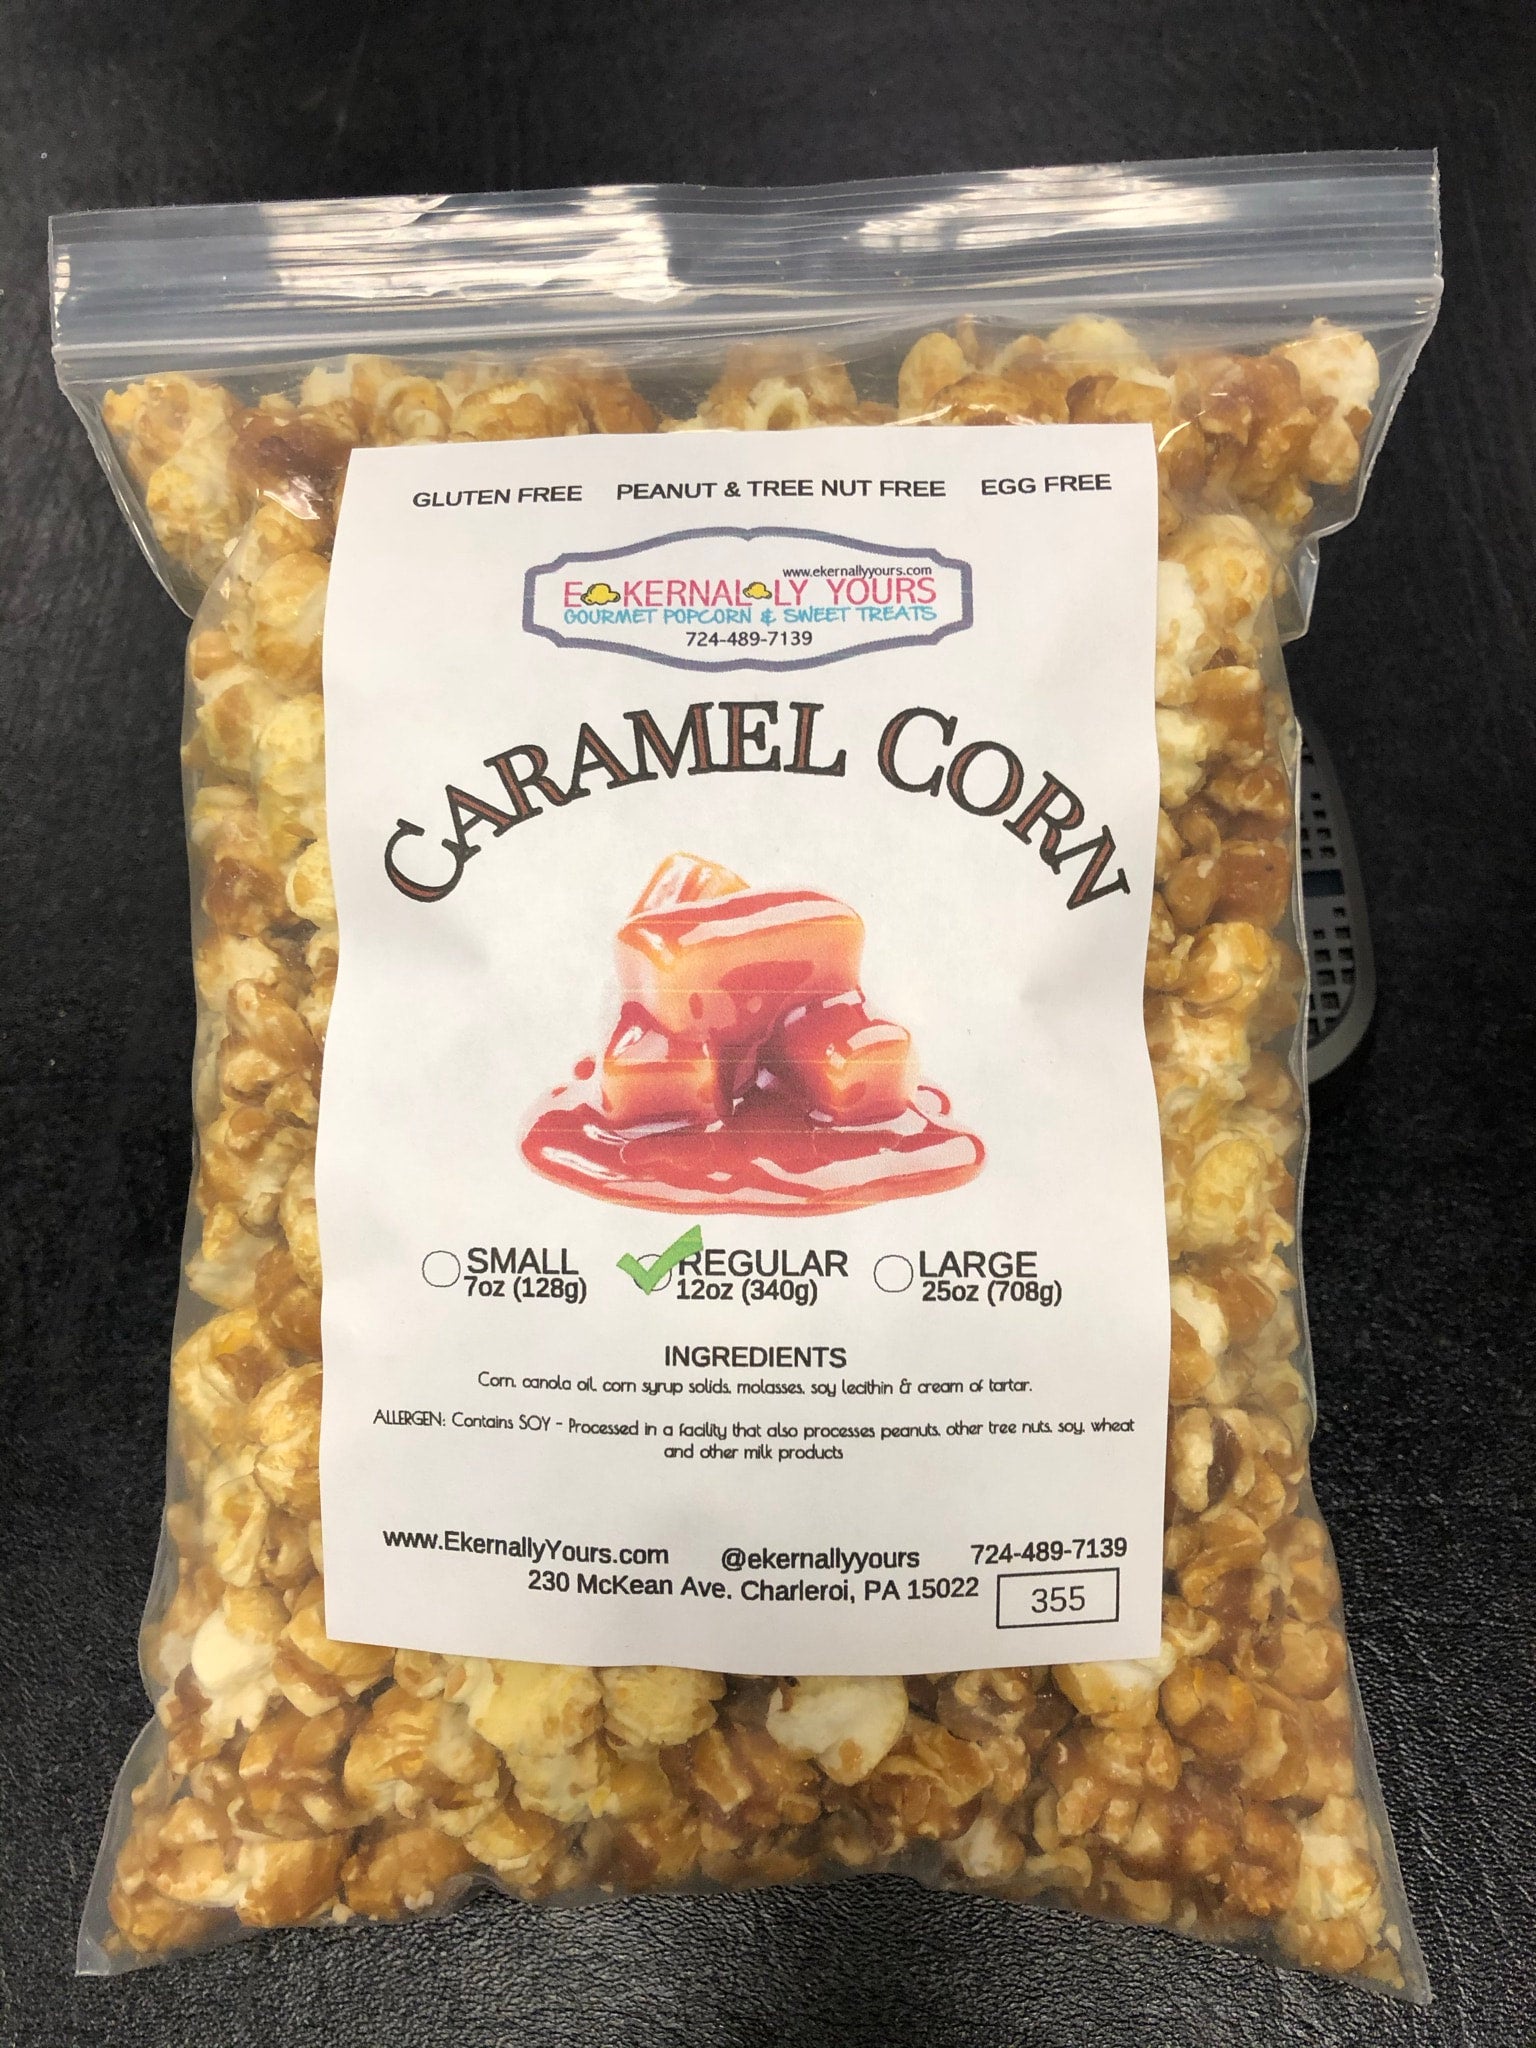 caramel corn bag